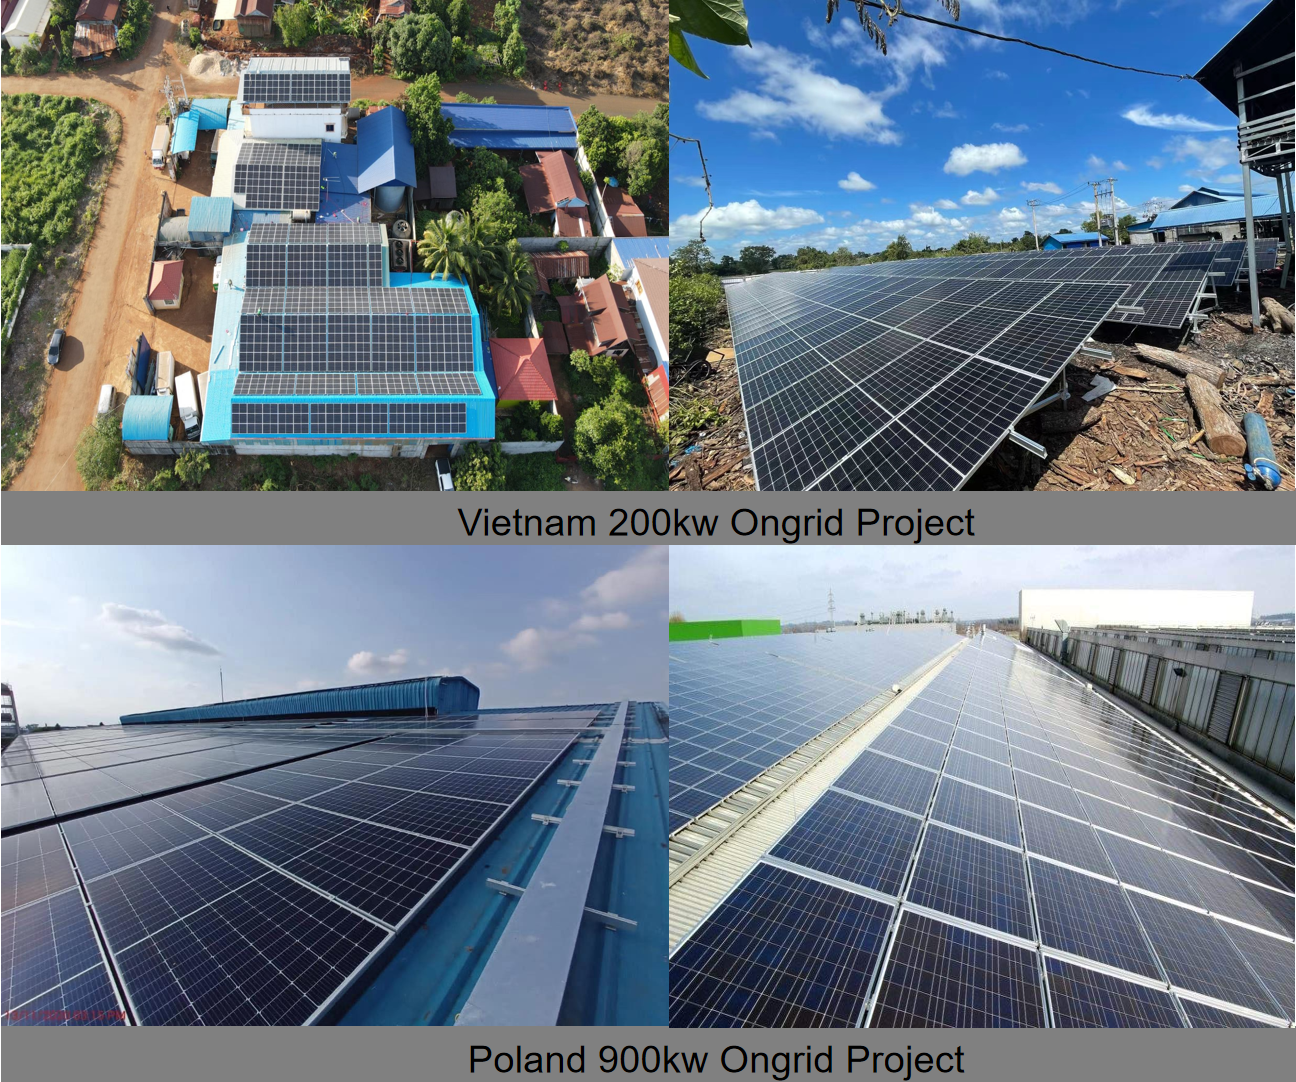  LVTOPSUN High Efficiency 445w Solar Panel Photovoltaic Module Mono Cell 